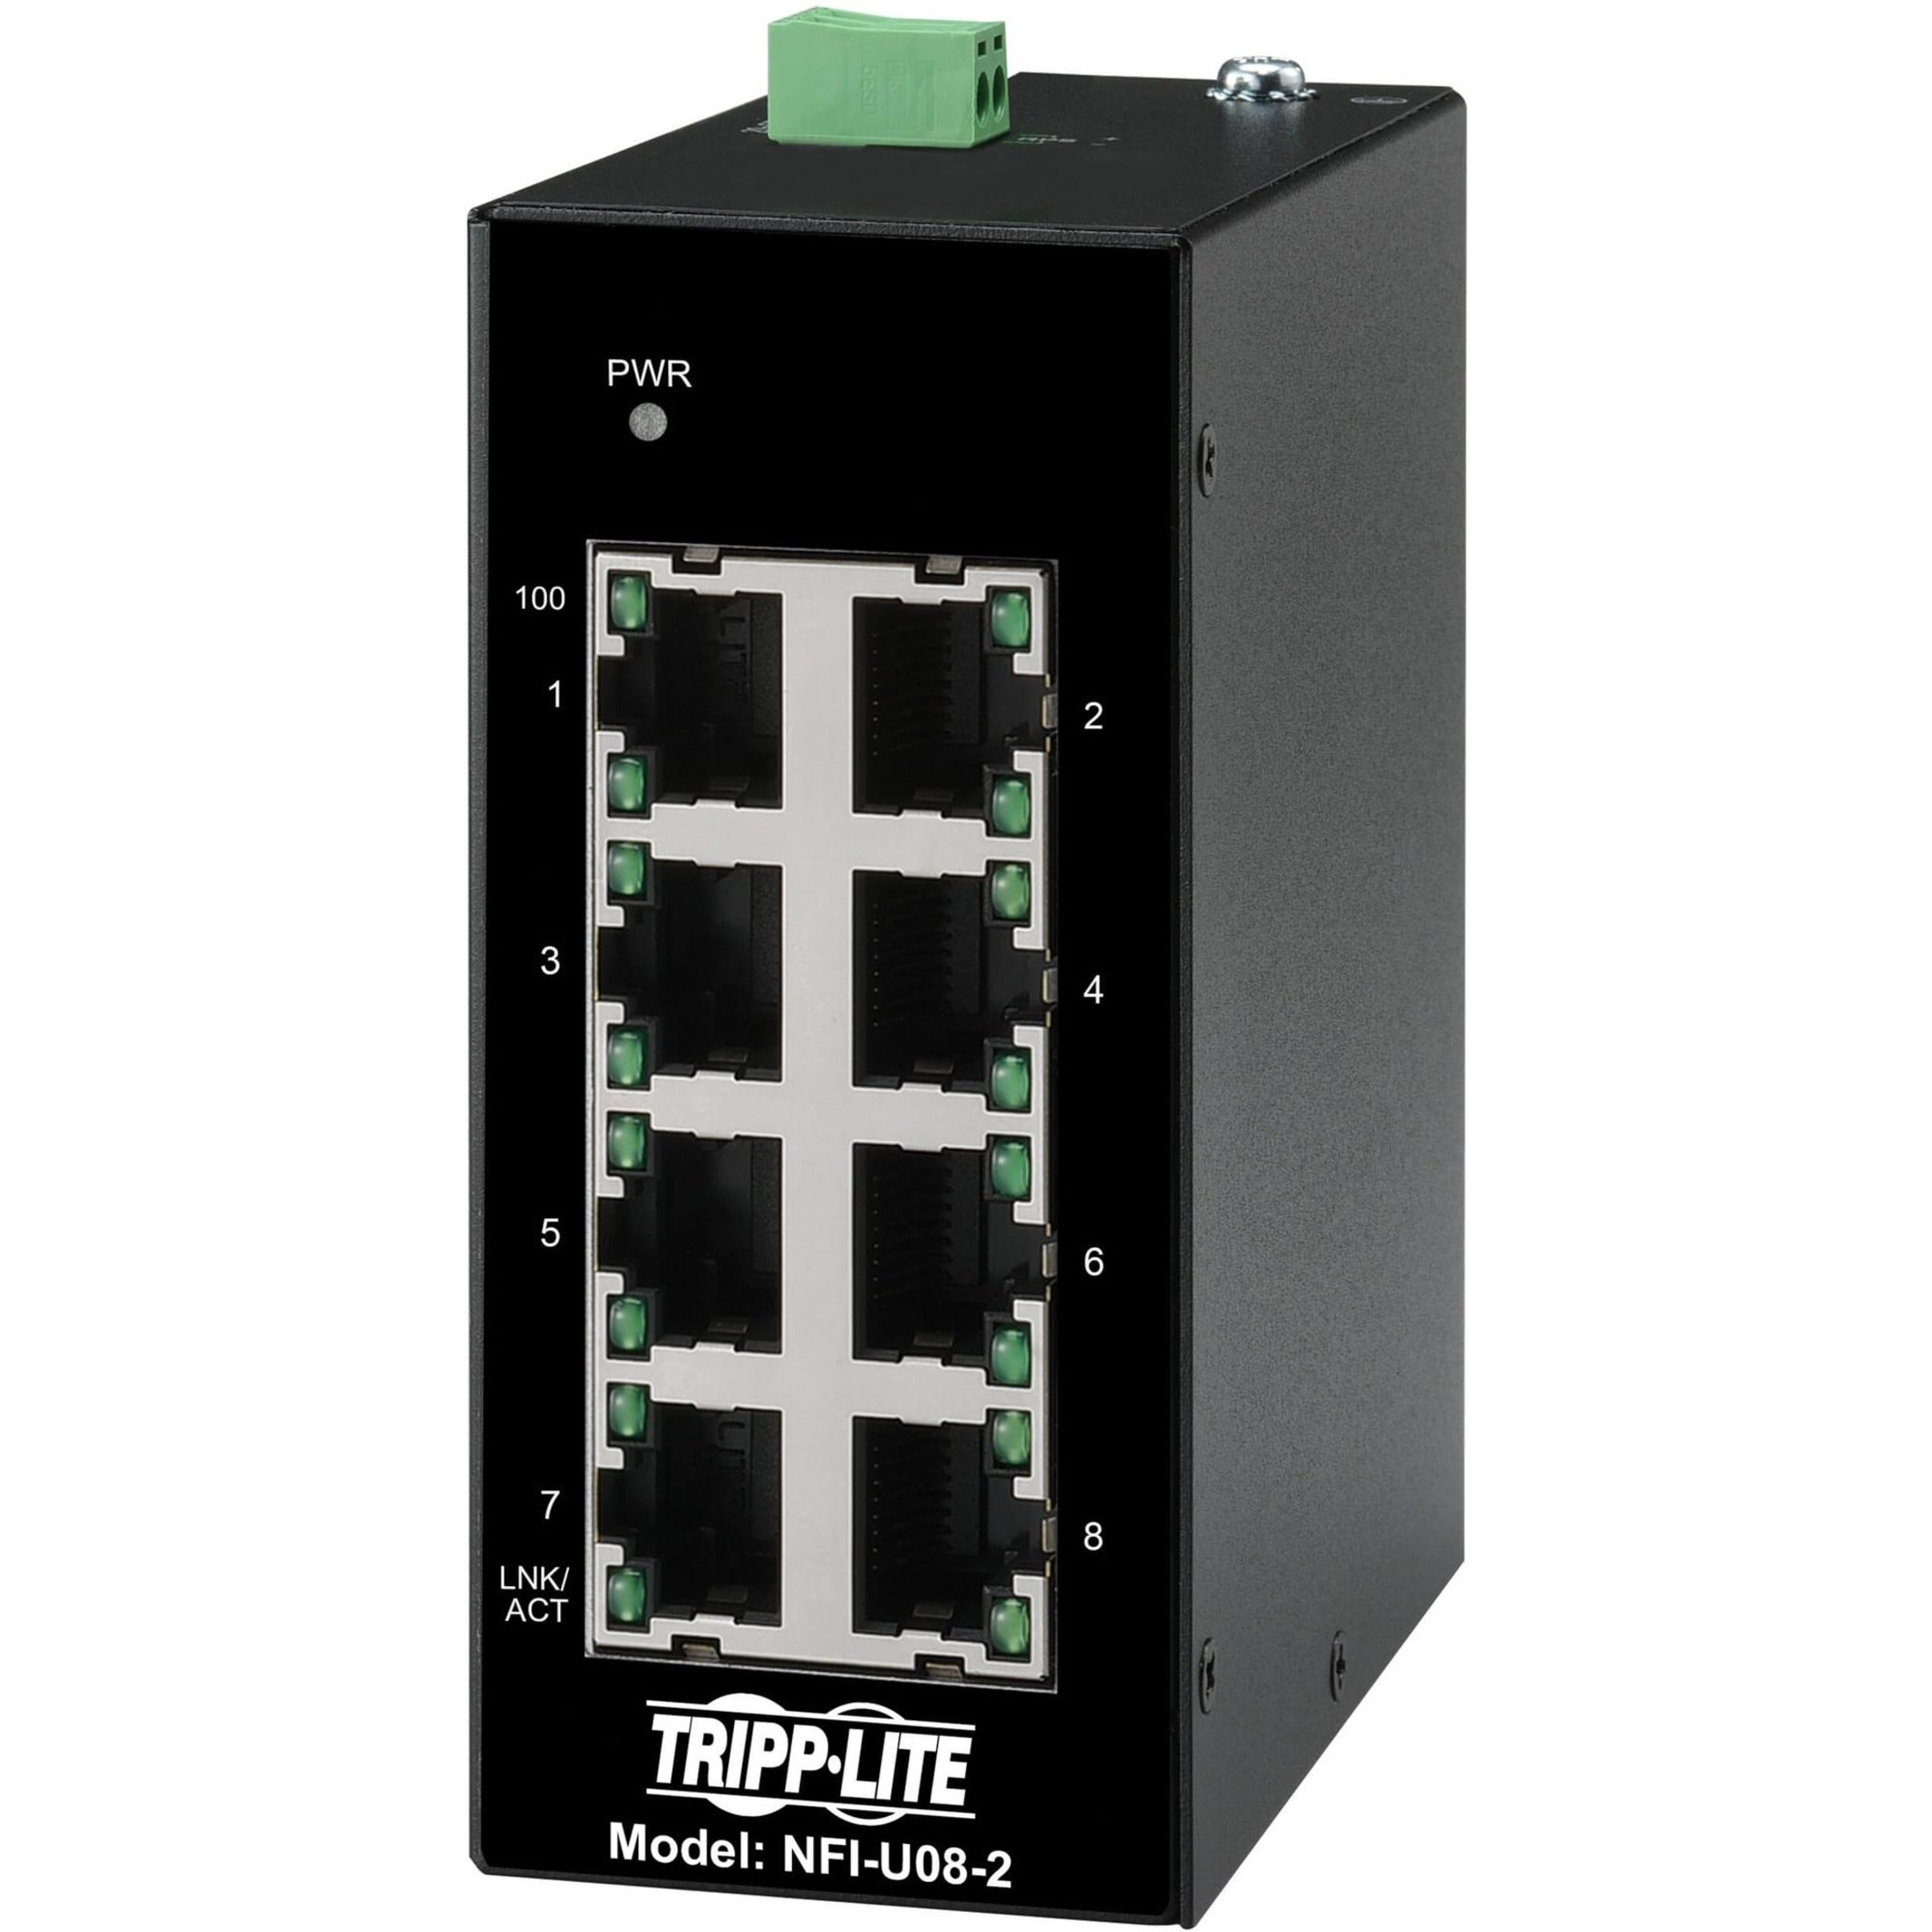 Tripp Lite NFI-U08-2 Ethernet Switch, Unmanaged 8-Port Industrial DIN Mount 10/100 Mbps